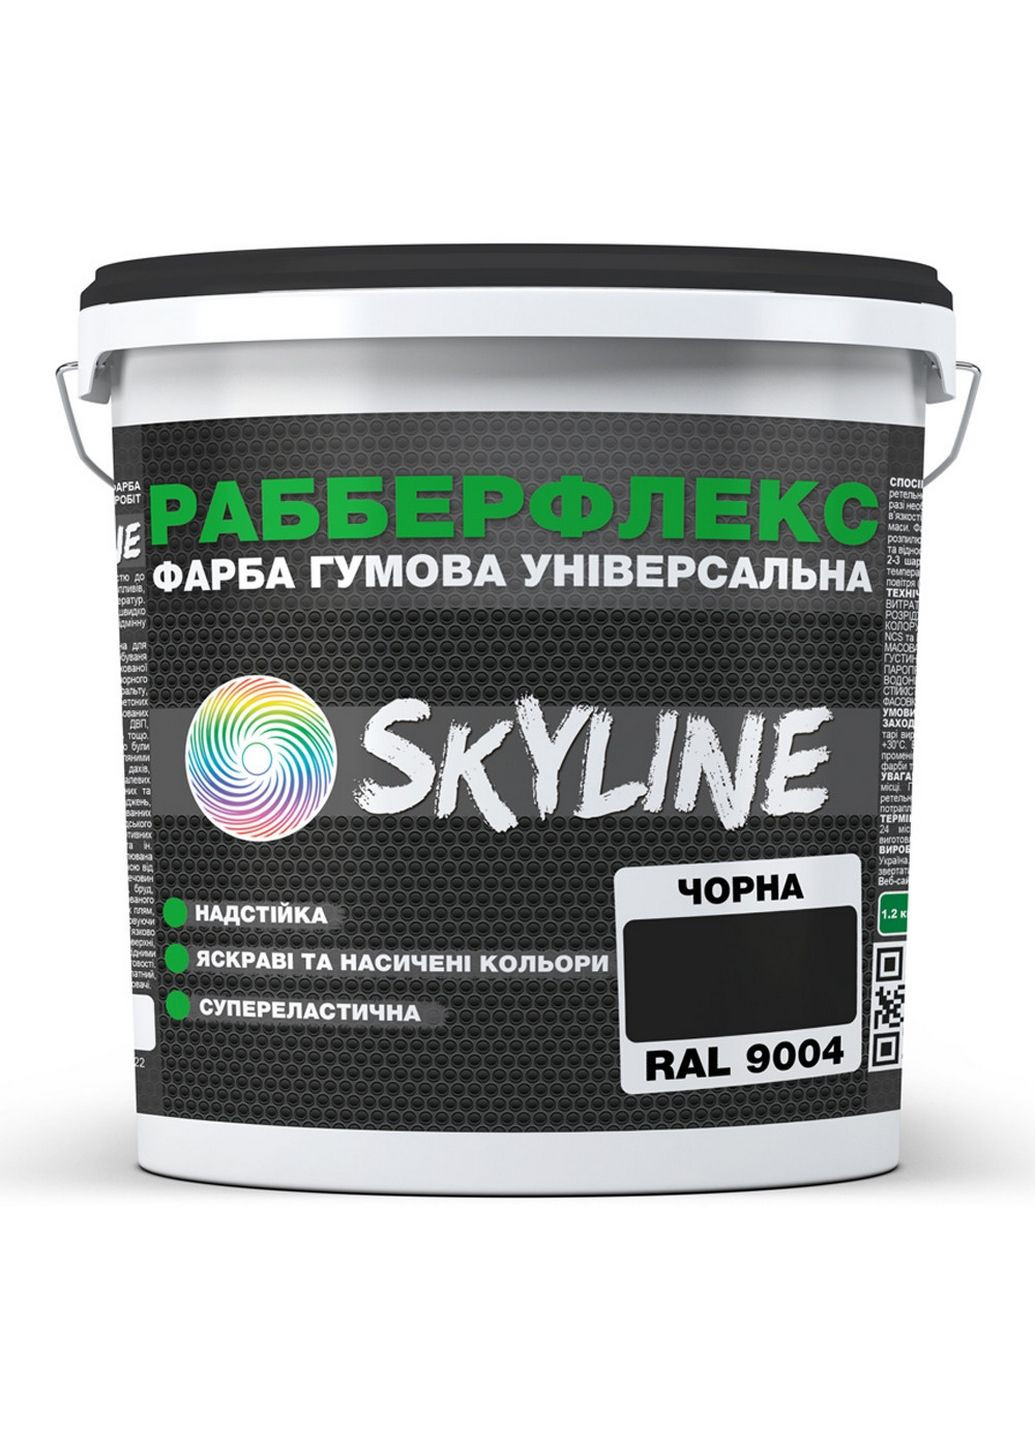 Надстійка фарба гумова супереластична «РабберФлекс» 6 кг SkyLine (289367701)